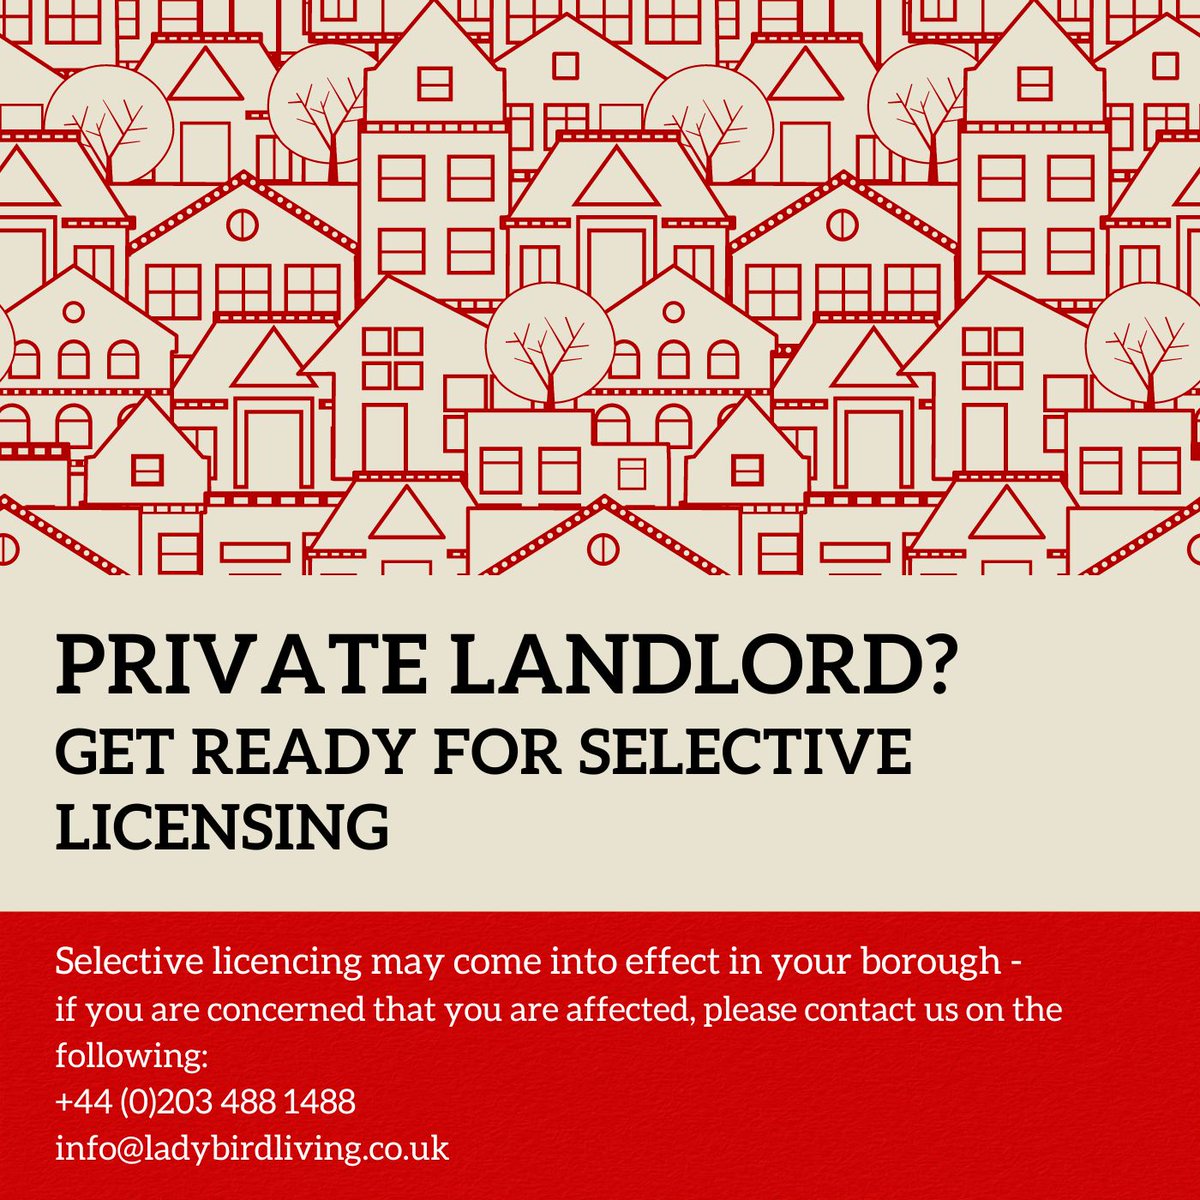 Private landlord? Get ready for selective licensing

#selectivelicensing #privatelandlord #landlords #property #realestate #rentproperty #propertyrental #shortlet #holidaylets #ladybirdliving